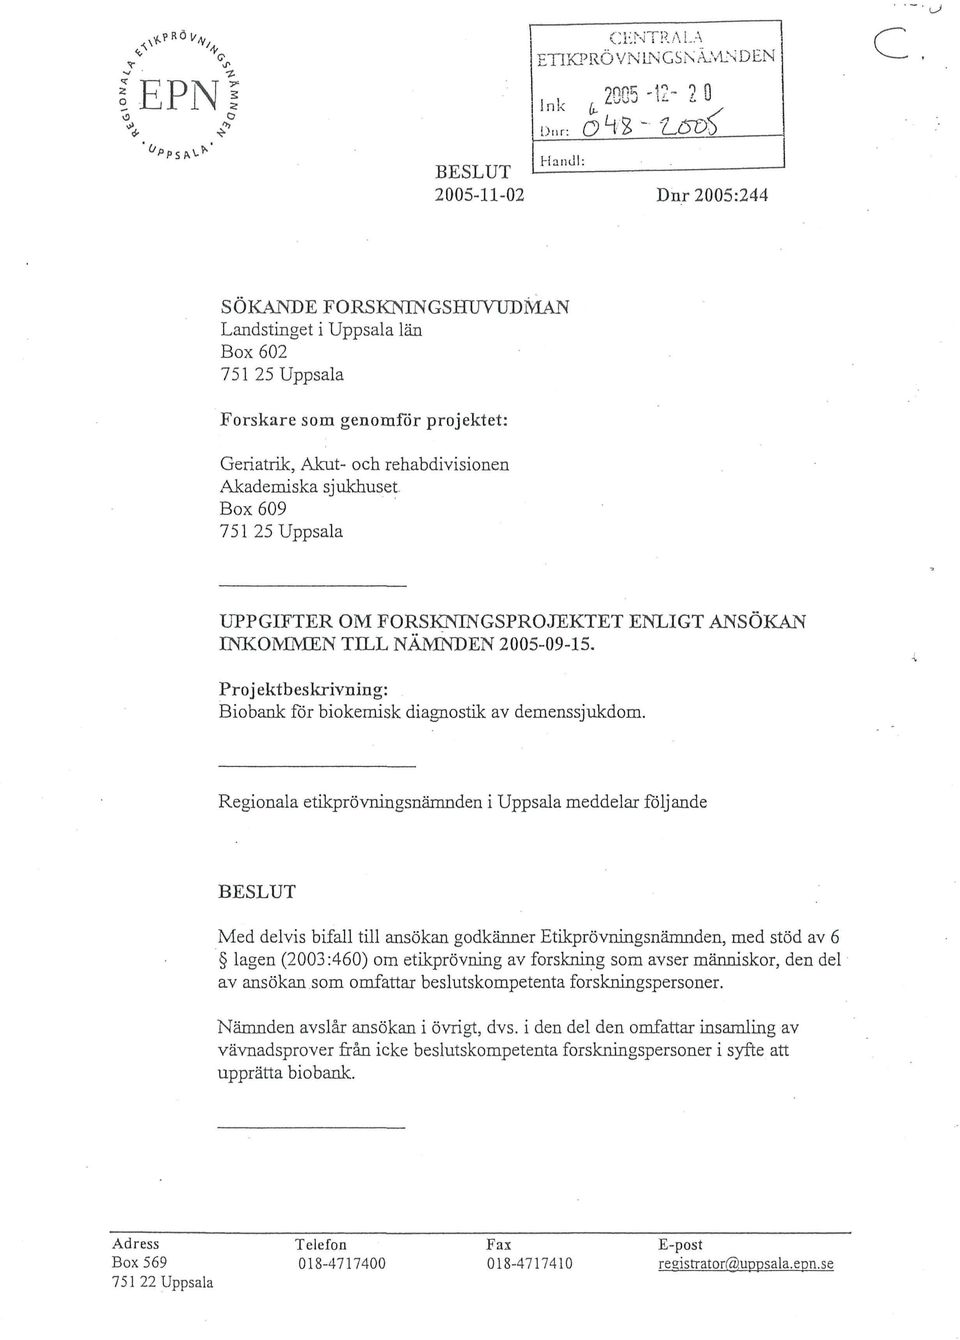 Box 609 751 25 Uppsala UPPGIFTER OM FORSKNINGSPROJEKTET ENLIGT ANSÖKAN INKOMMEN TILL NÄMNDEN 2005-09-15. Projektbeskrivning: Biobank för biokemisk diagnostik av demenssjukdom.